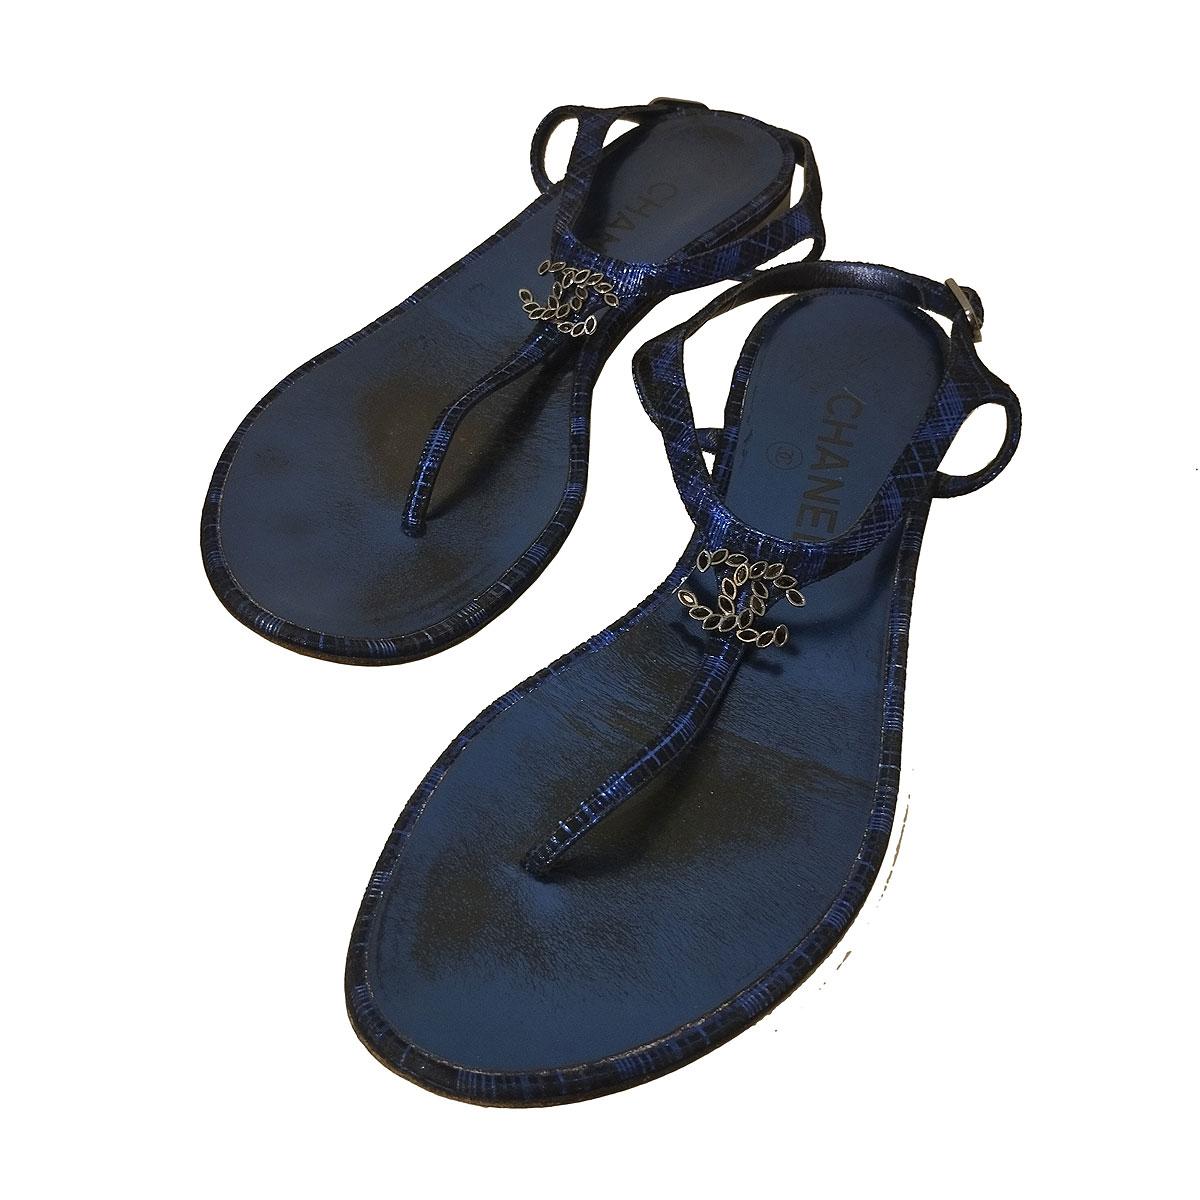 ikonische und schicke Sandalen von Chanel
Leder 
Blaue Farbe
Texturiert
CC Metall-Logo plus Steine
Knöchelriemen
Superflach
Absatzhöhe cm 1 (0,39 Zoll)
Weltweiter schneller Versand im Preis inbegriffen